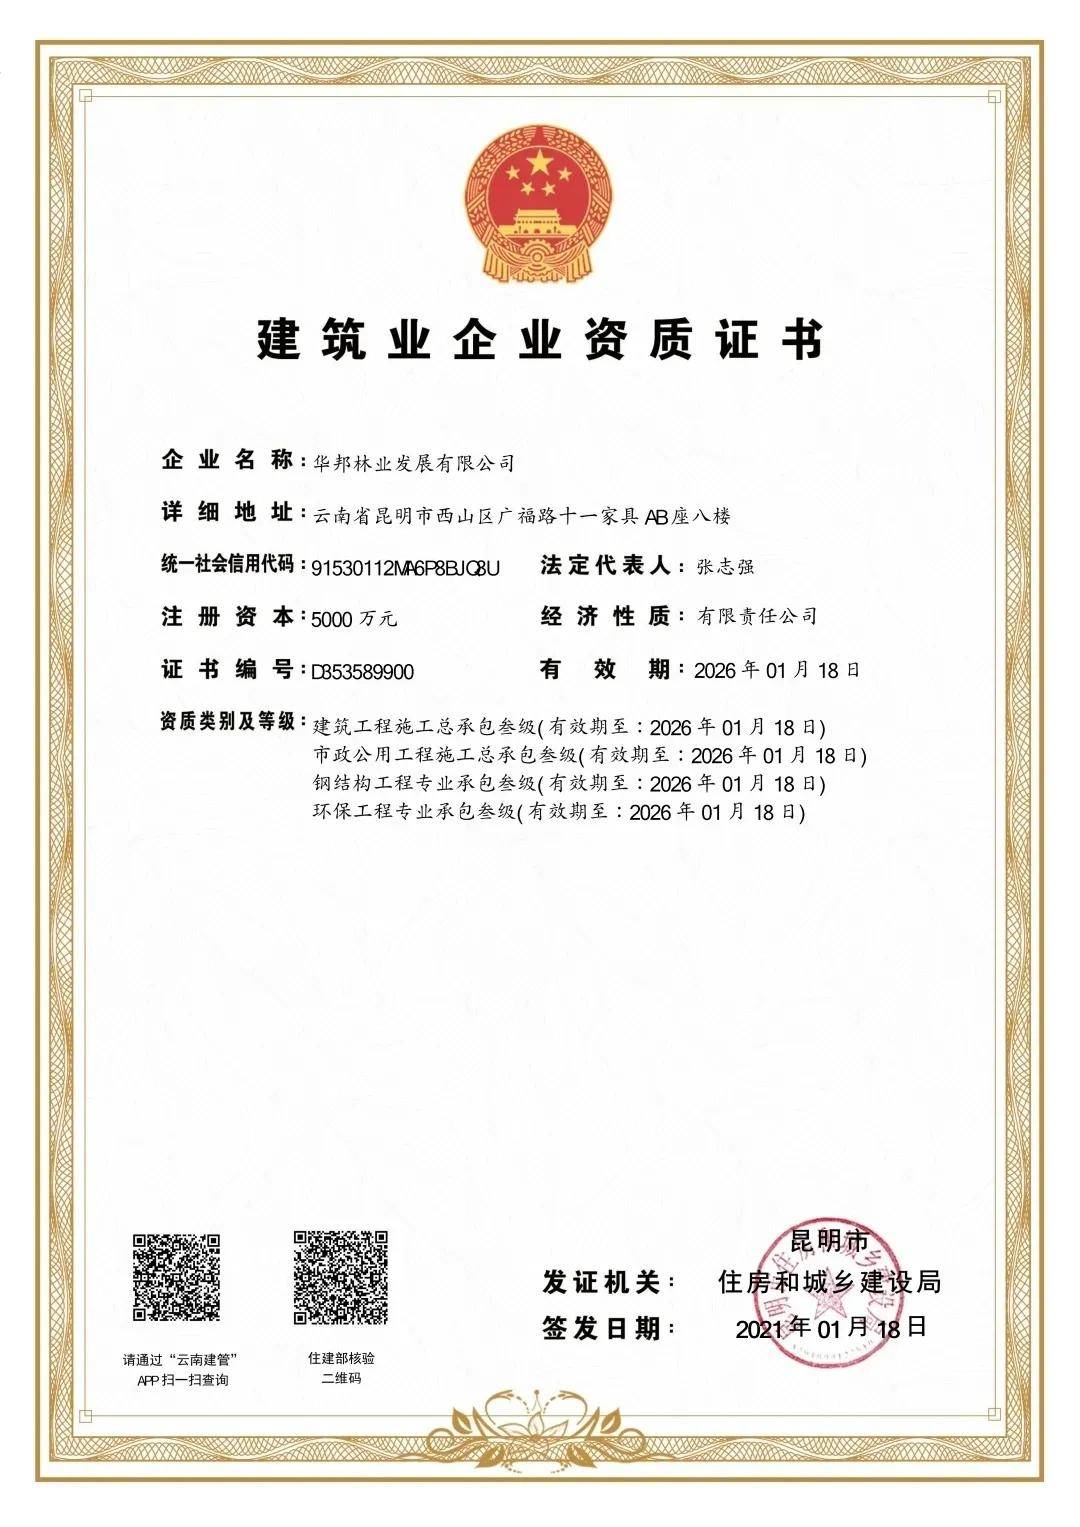 华邦林业发展公司获得四项资质证书